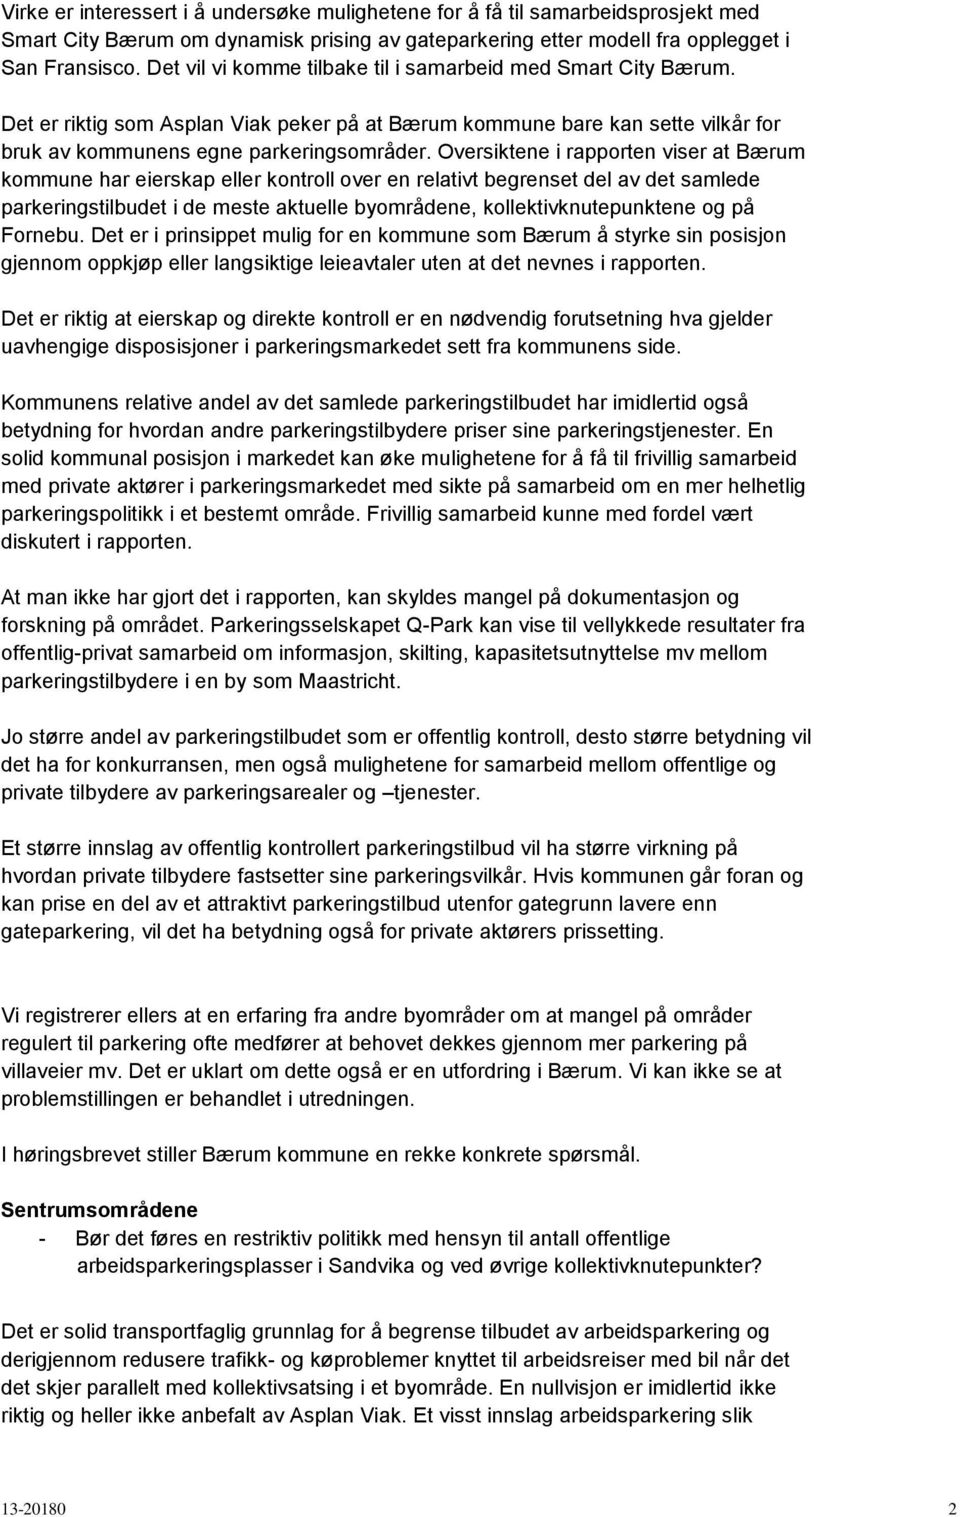 Oversiktene i rapporten viser at Bærum kommune har eierskap eller kontroll over en relativt begrenset del av det samlede parkeringstilbudet i de meste aktuelle byområdene, kollektivknutepunktene og